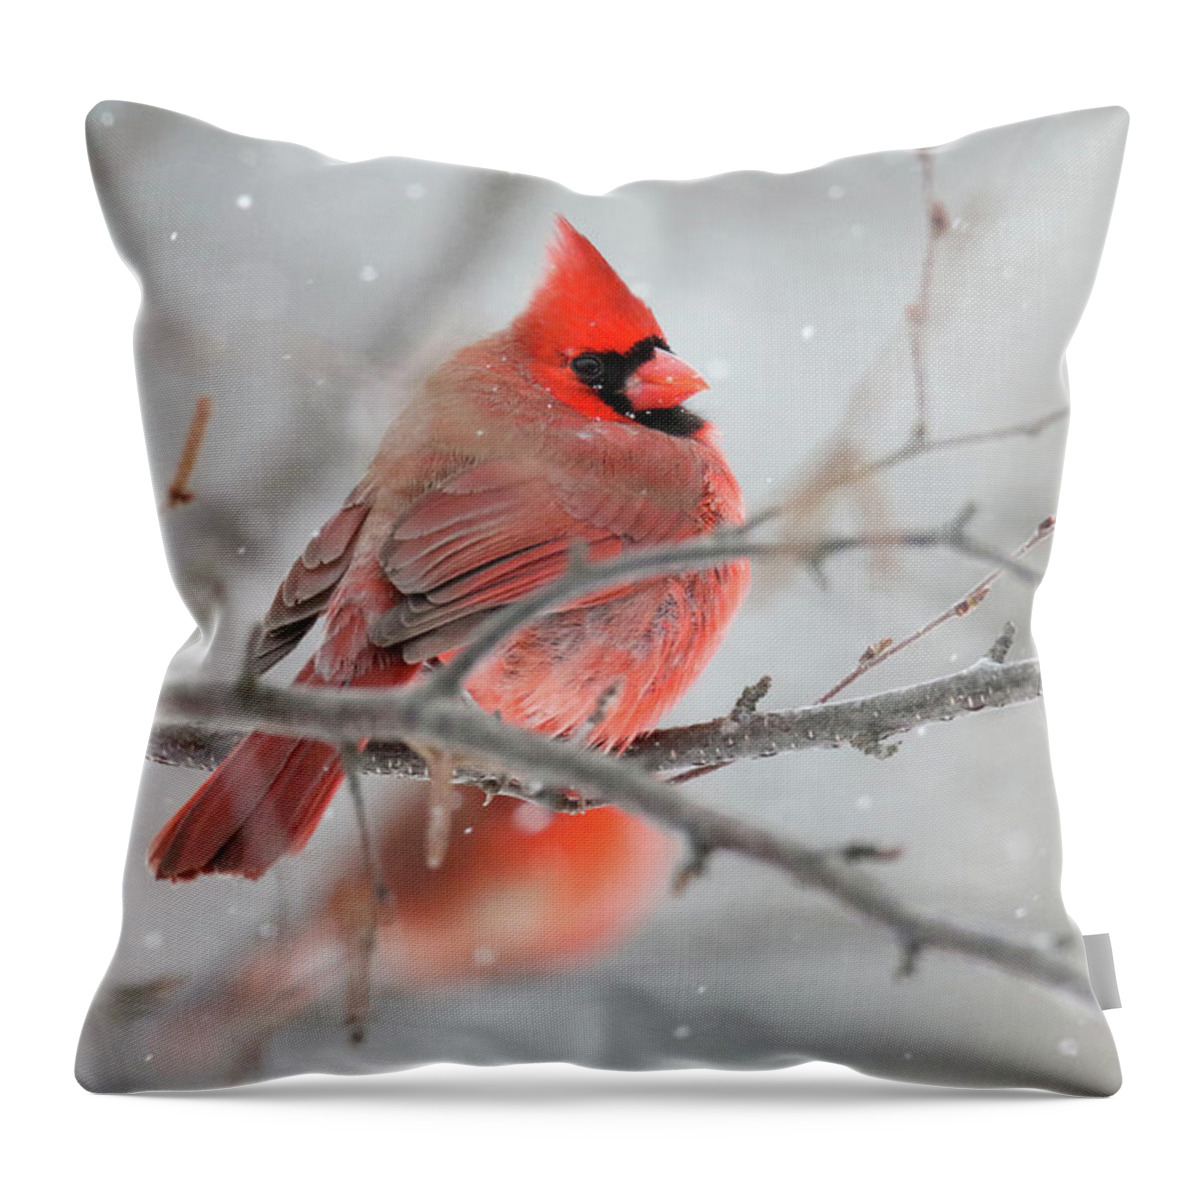 Cardinal Throw Pillow featuring the photograph Snowy Cardinal by Brook Burling